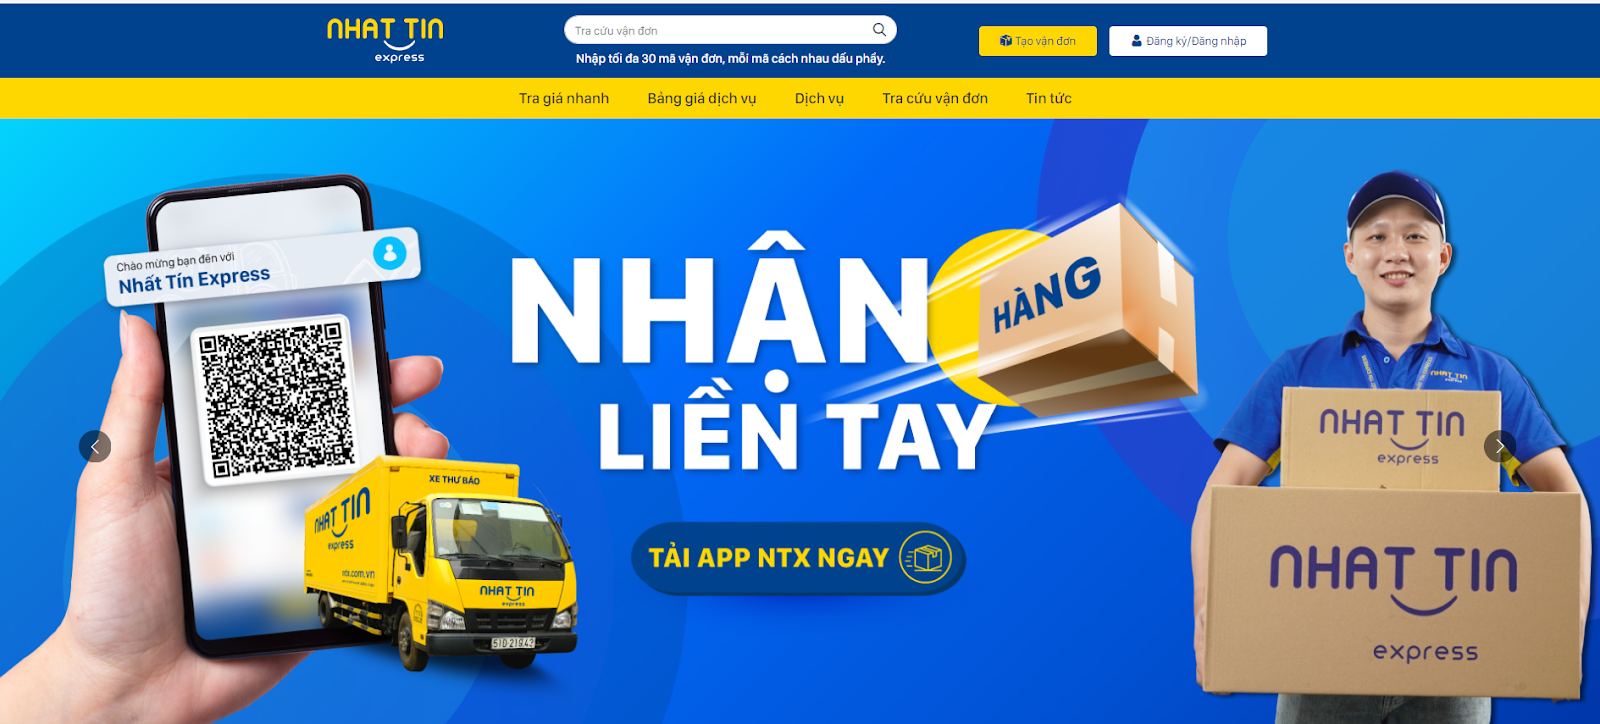 Tra cứu vận đơn nhanh chóng với giao diện website mới của NTX - Nhất Tín Express